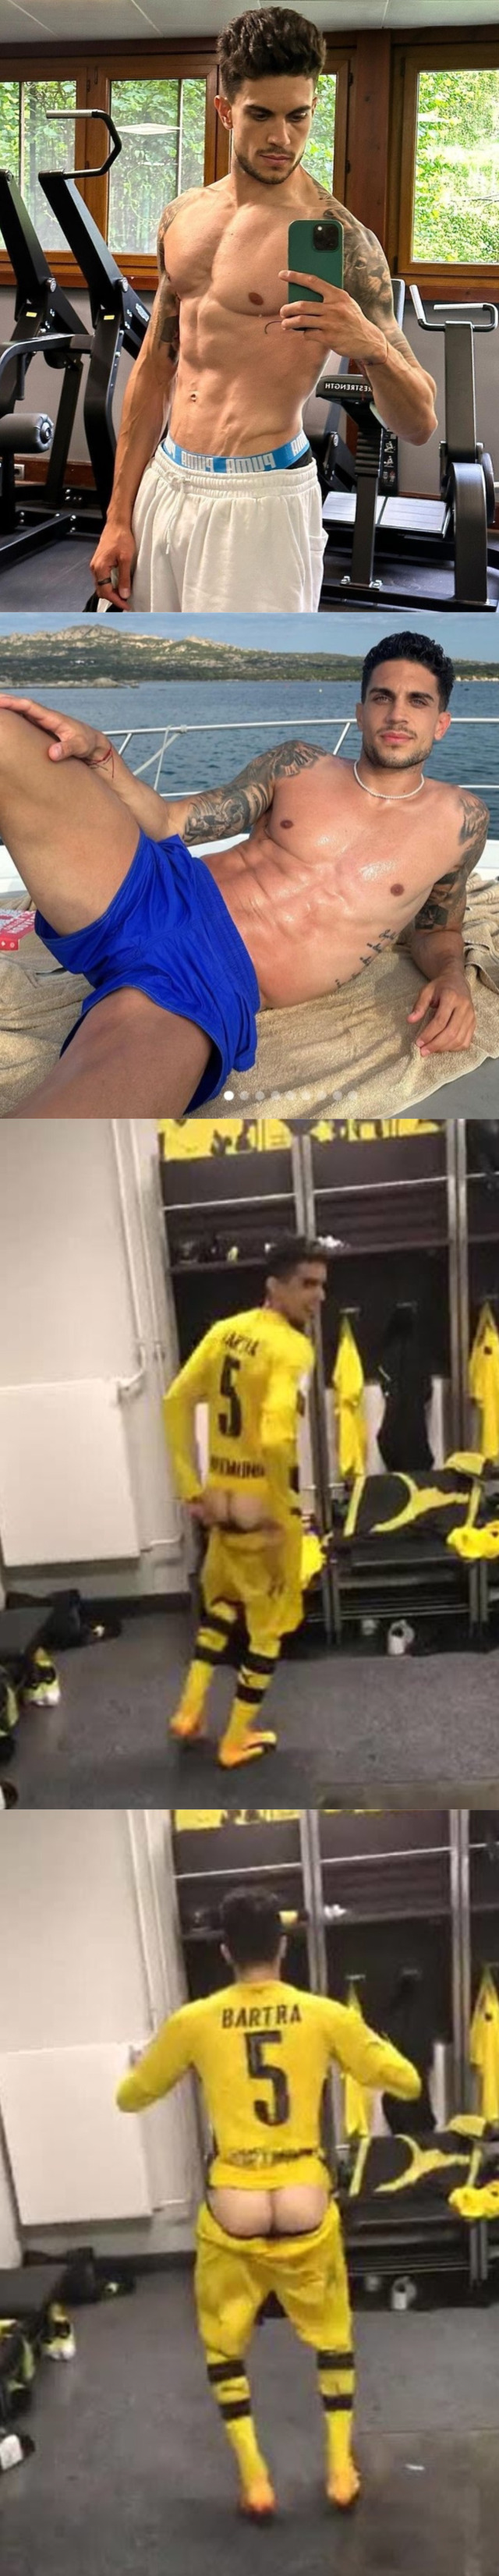 spanish footballer Marc Bartra flashing ass in locker room